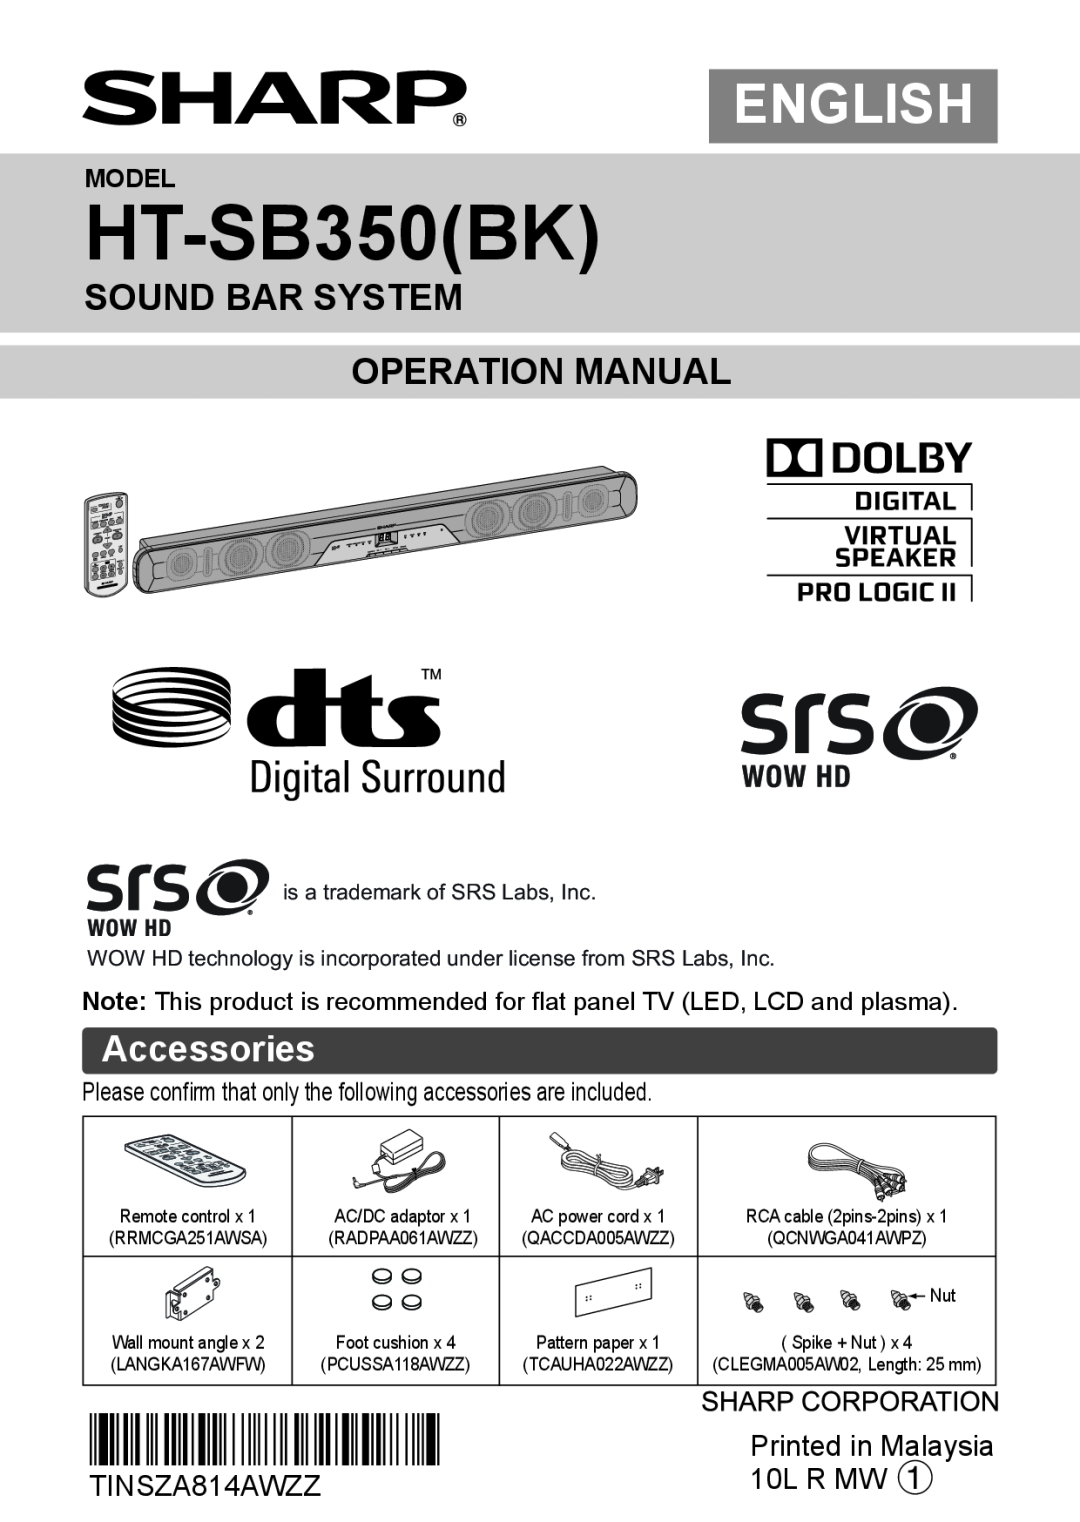 Sharp HTSB350 operation manual Accessories, Model, HT-SB350BK, English, TINSZA814AWZZB8, 10L R MW 